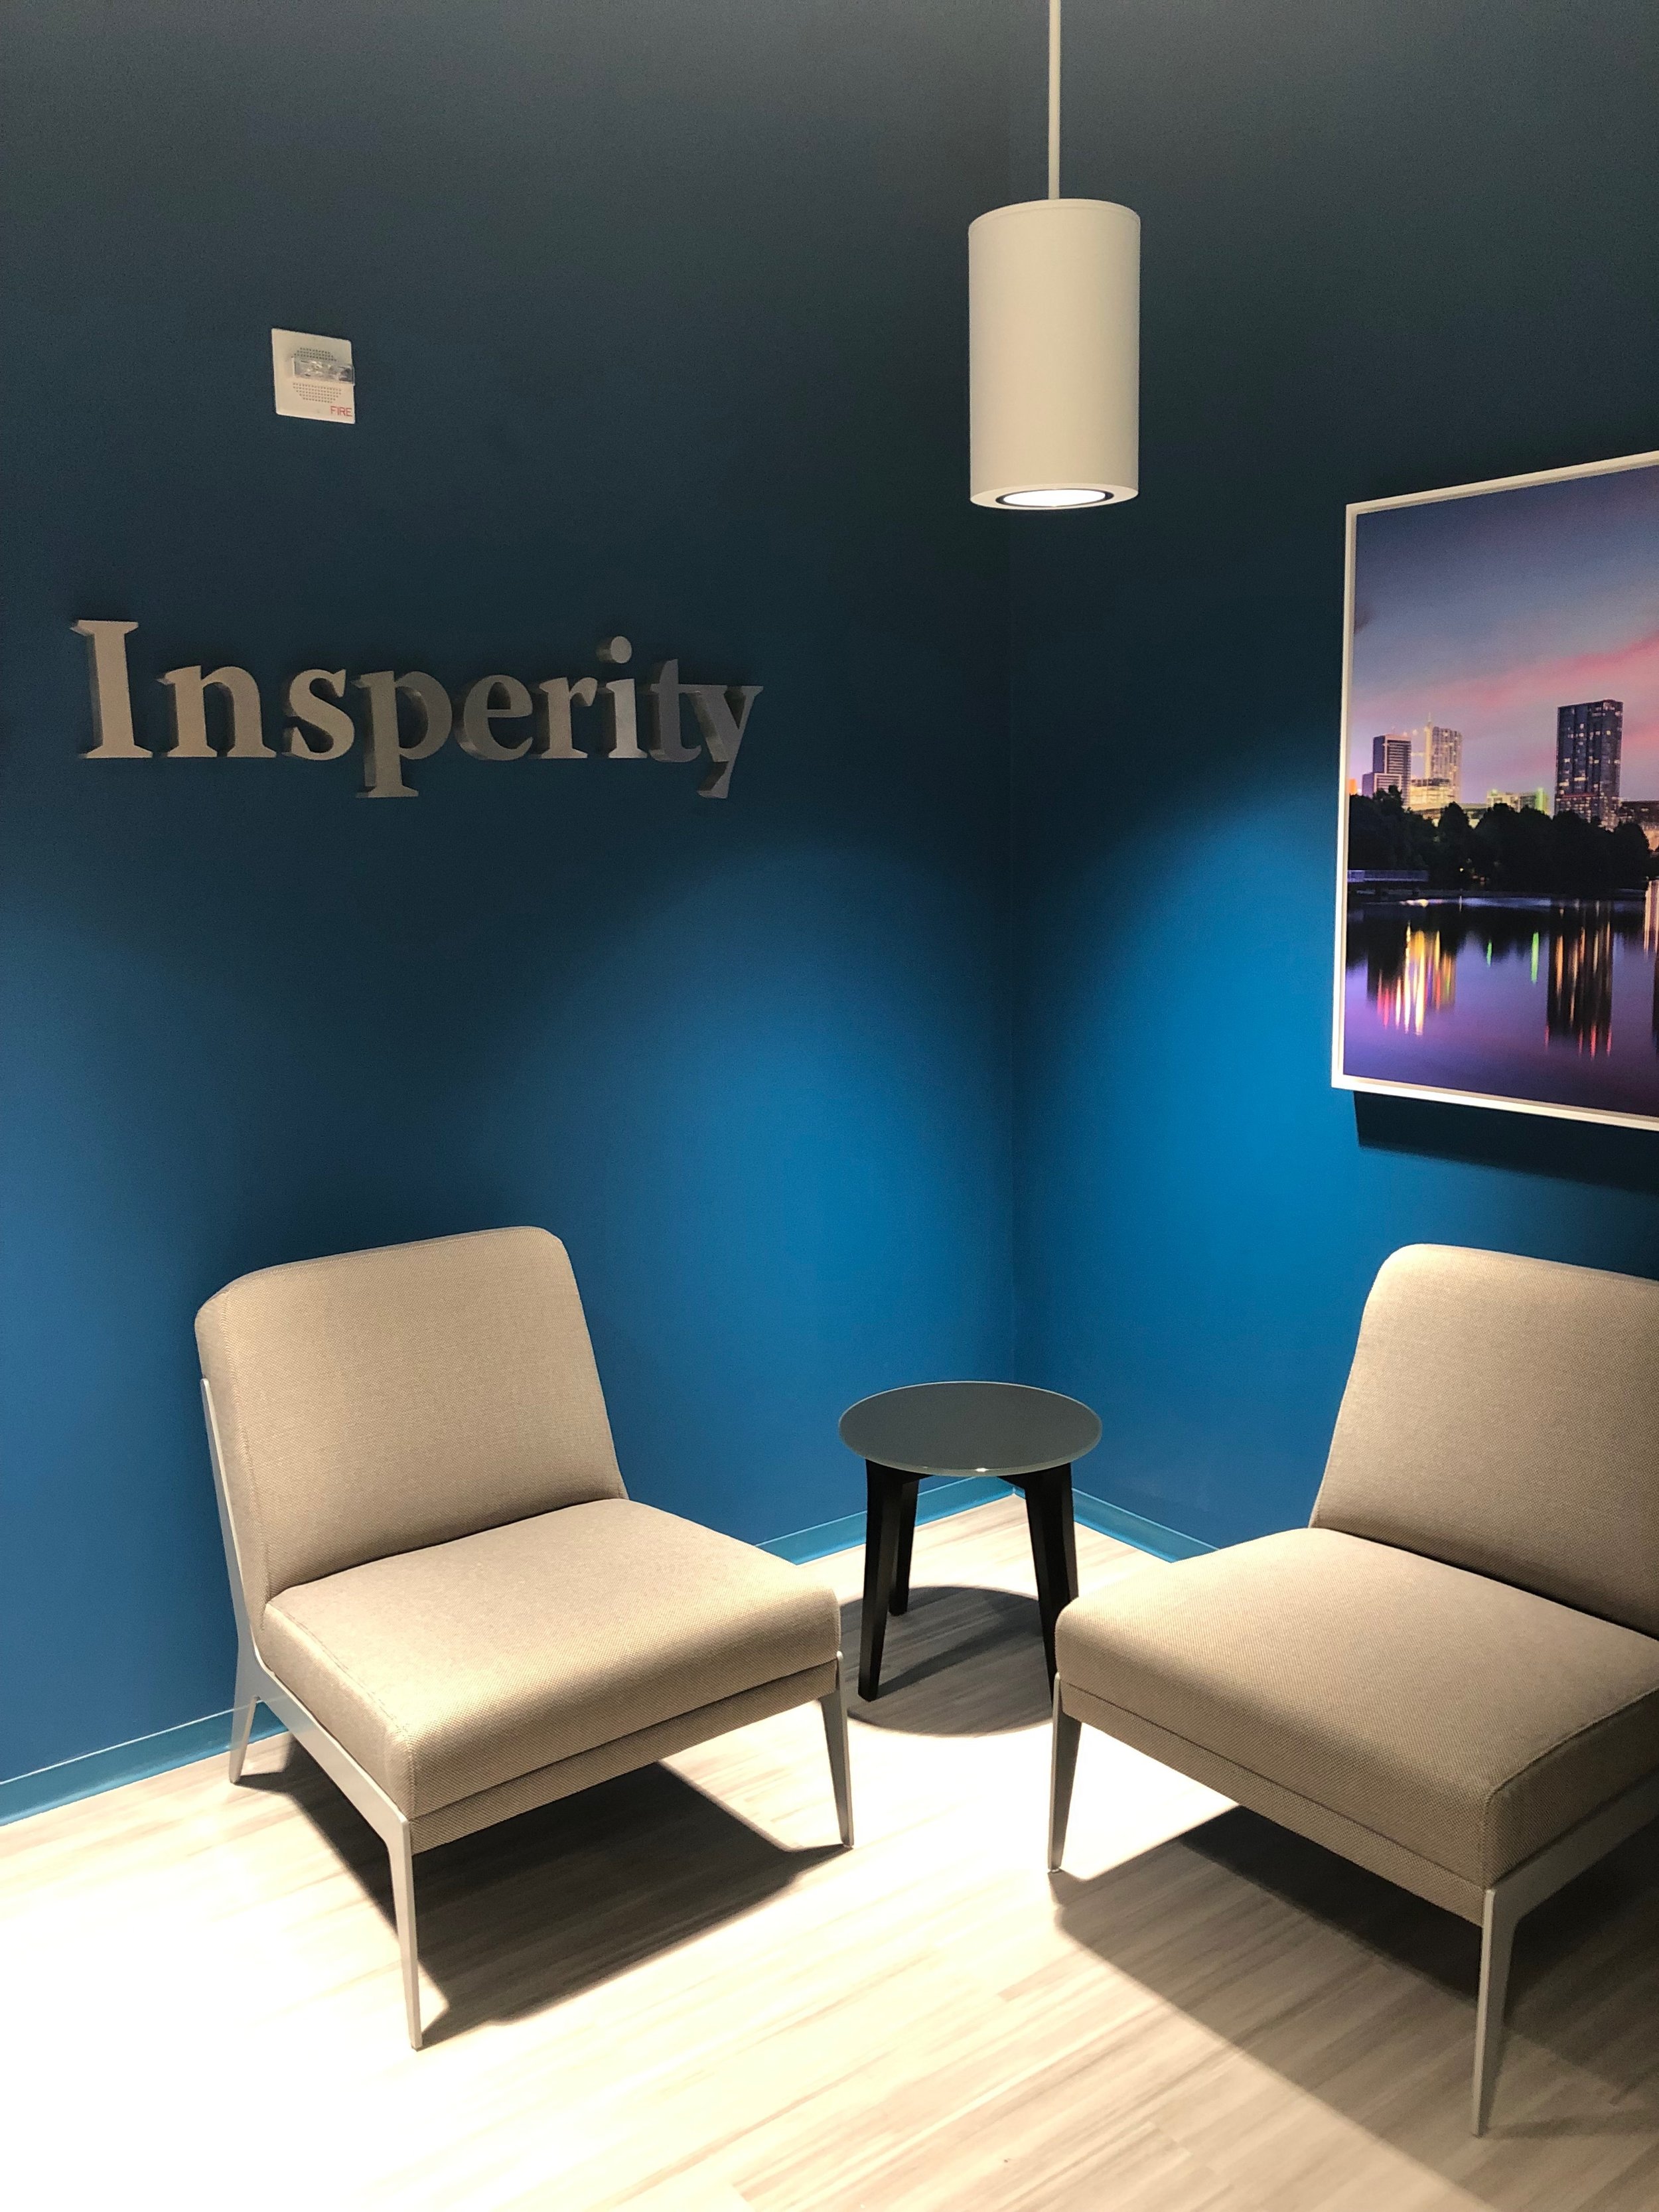 Insperity Office